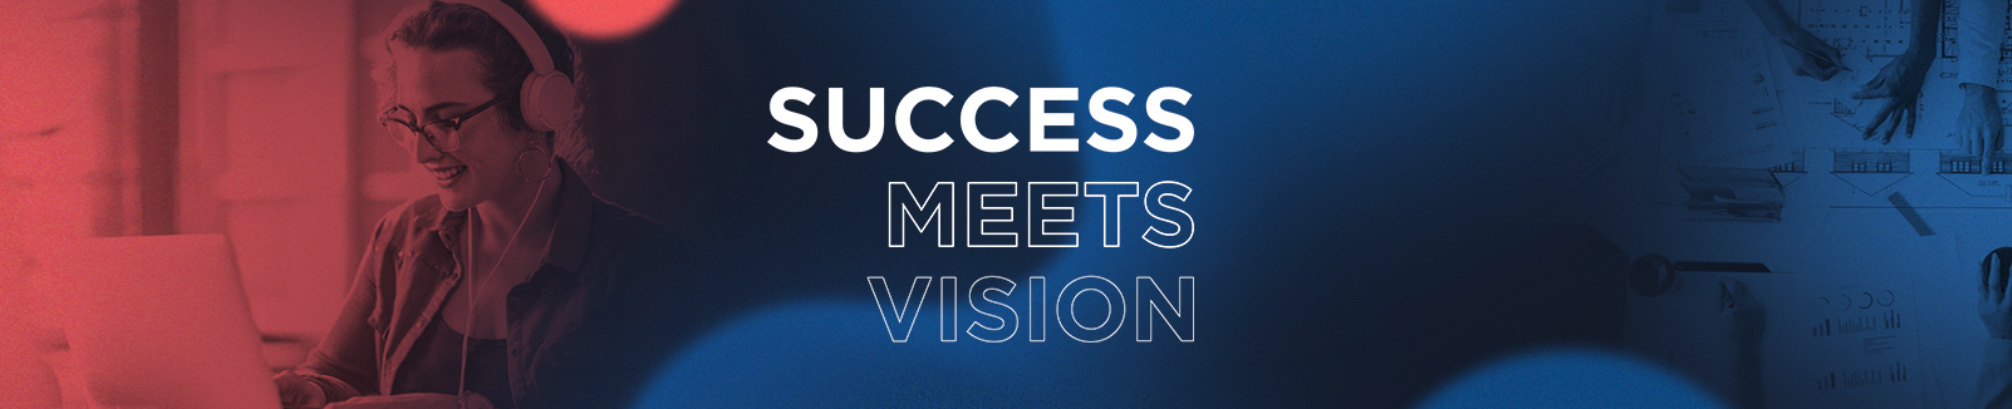 SM Vision Werbeagentur's profile banner